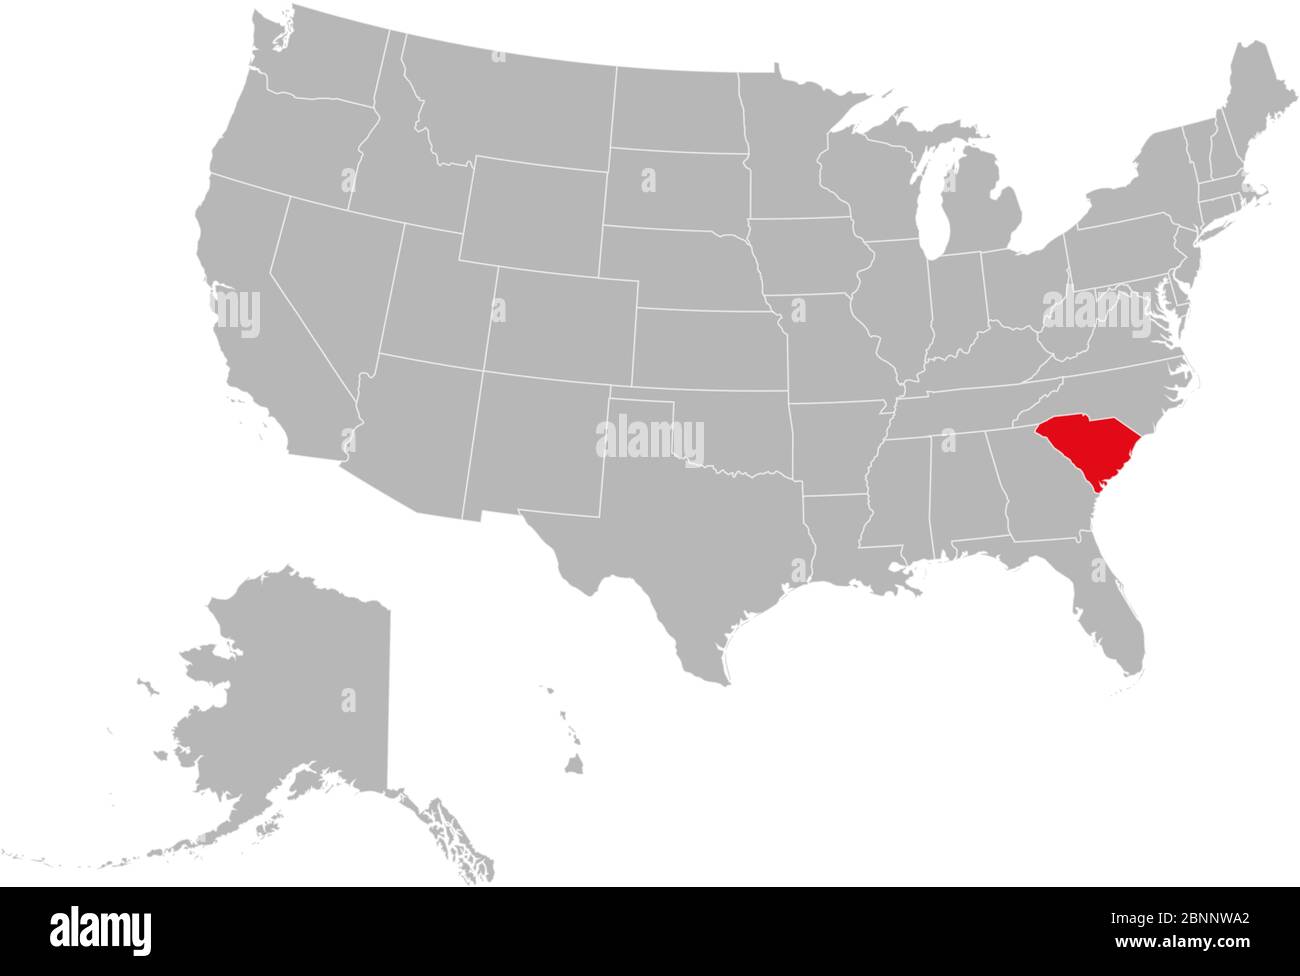 L'État de caroline du Sud est marqué en rouge sur la carte politique des États-Unis. Fond gris. Province des États-Unis. Illustration de Vecteur